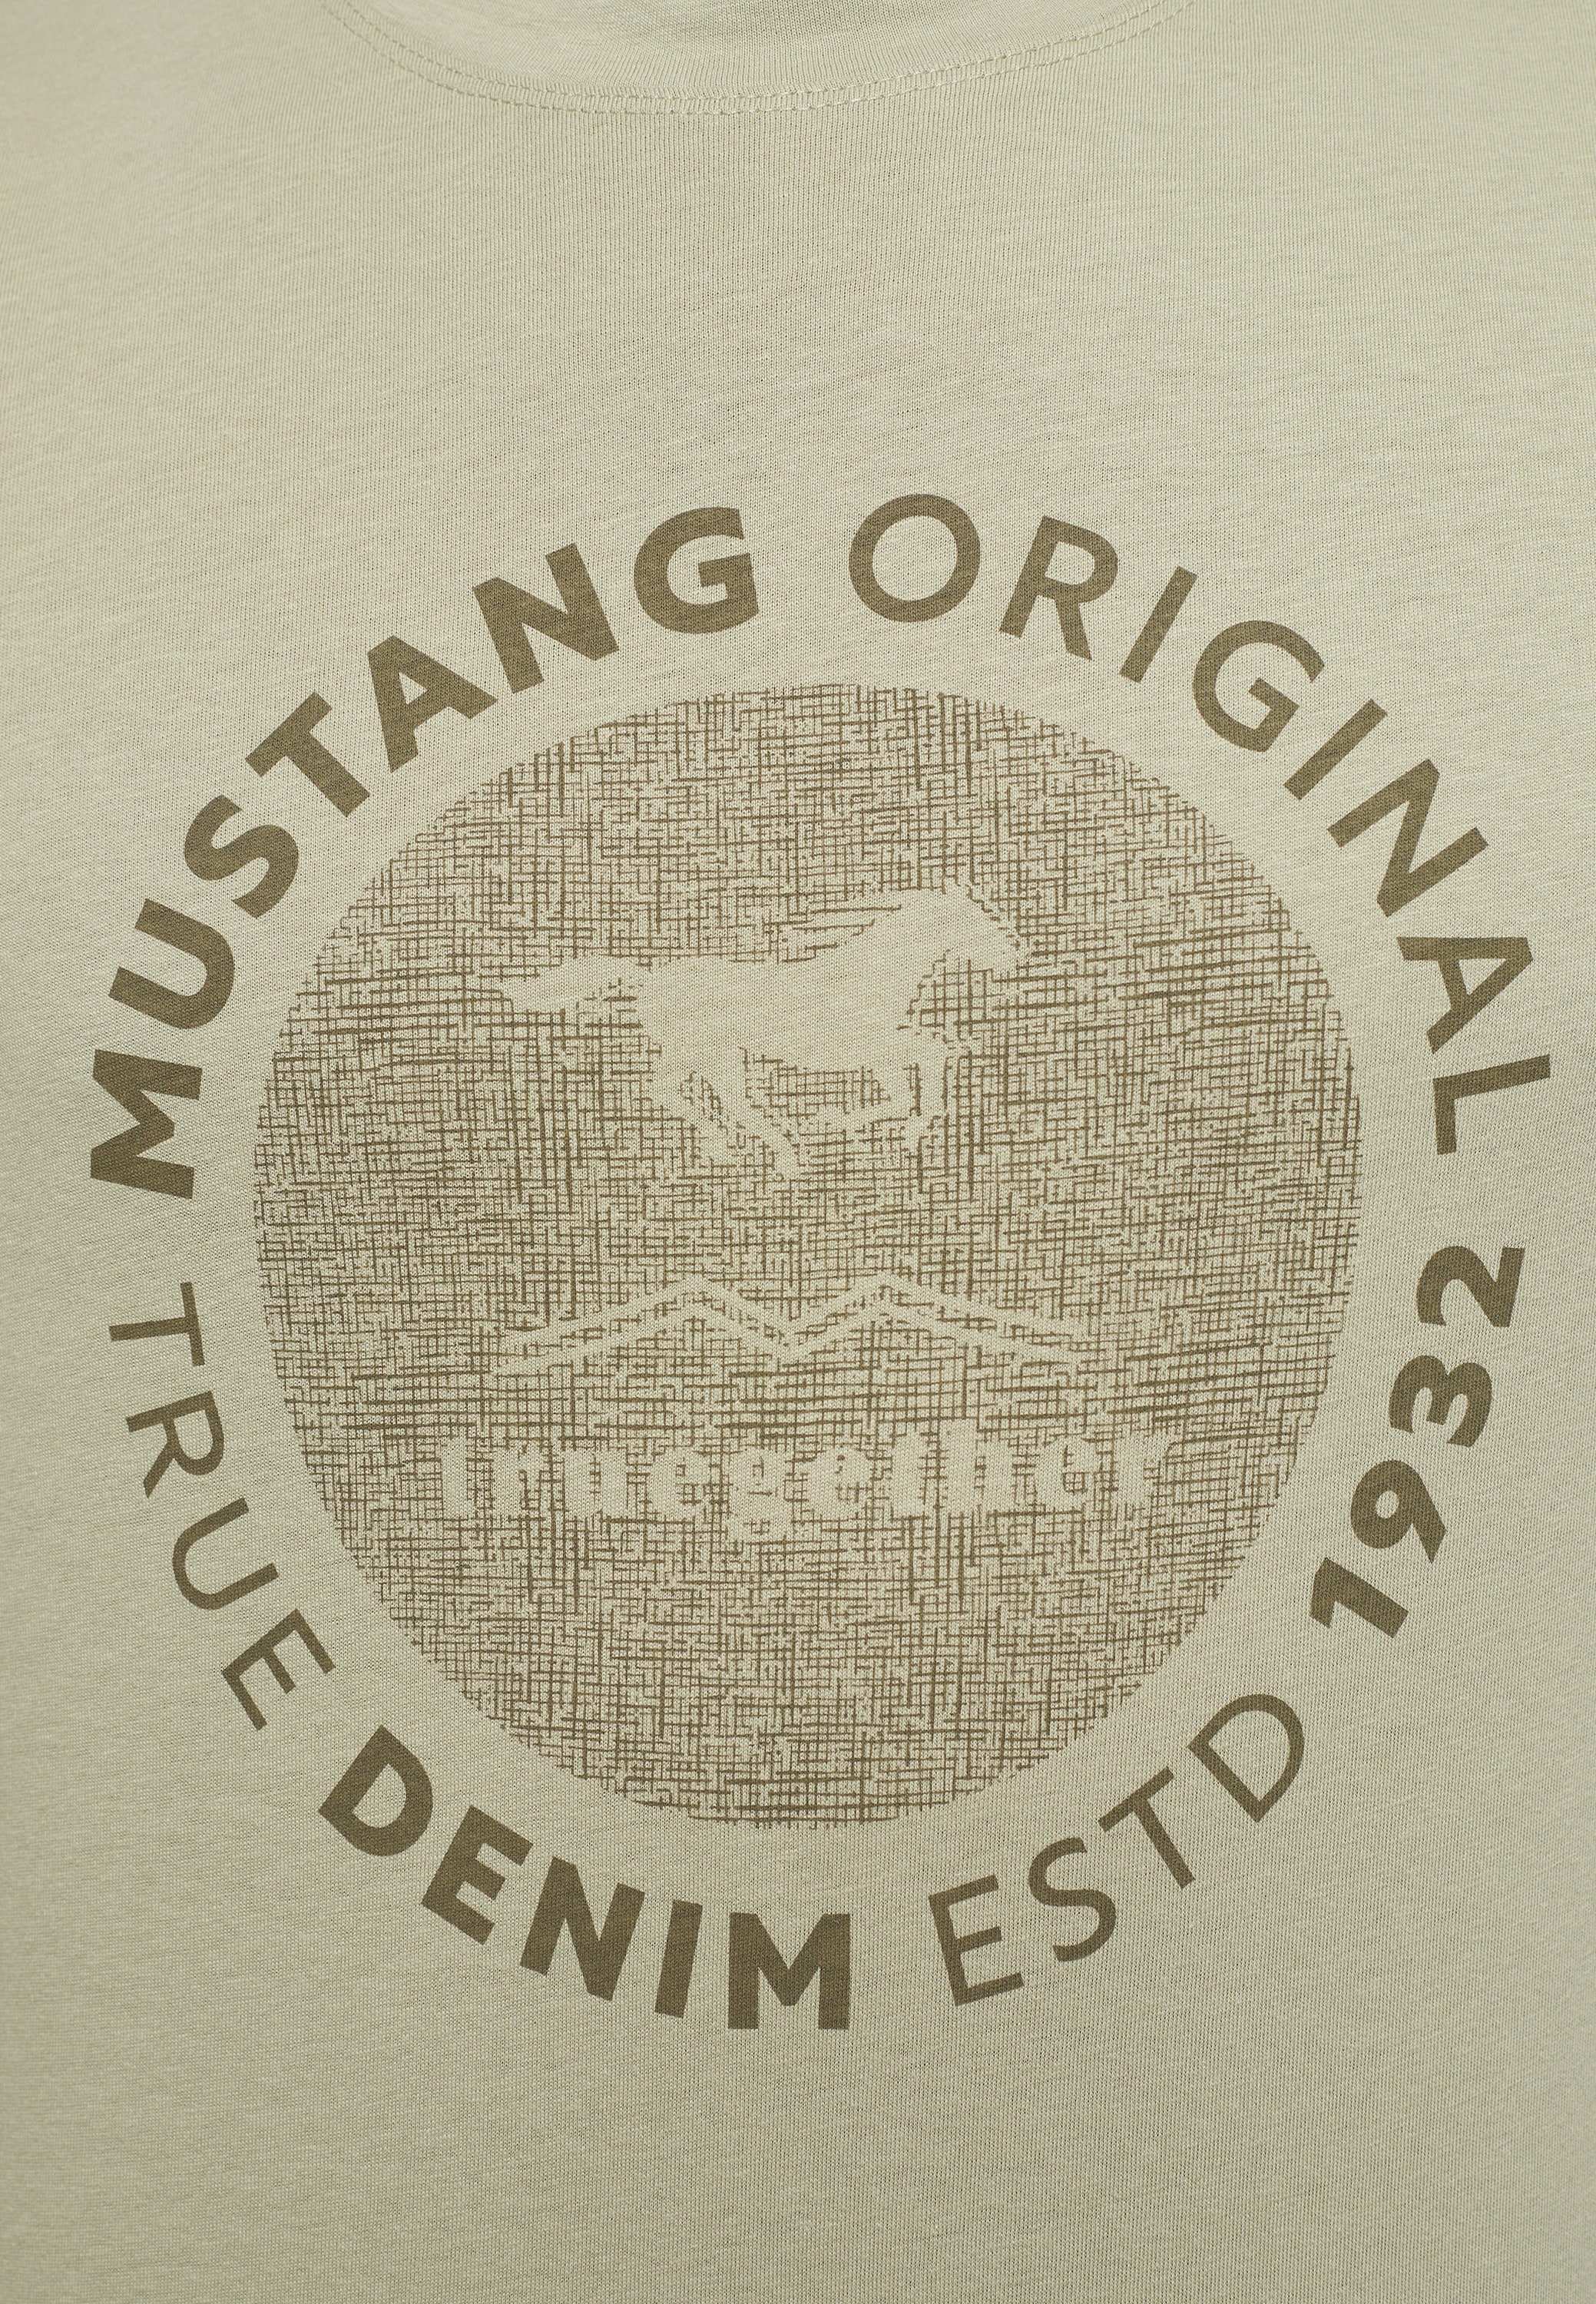 MUSTANG Kurzarmshirt »Mustang T-Shirt T-Shirt« online bestellen